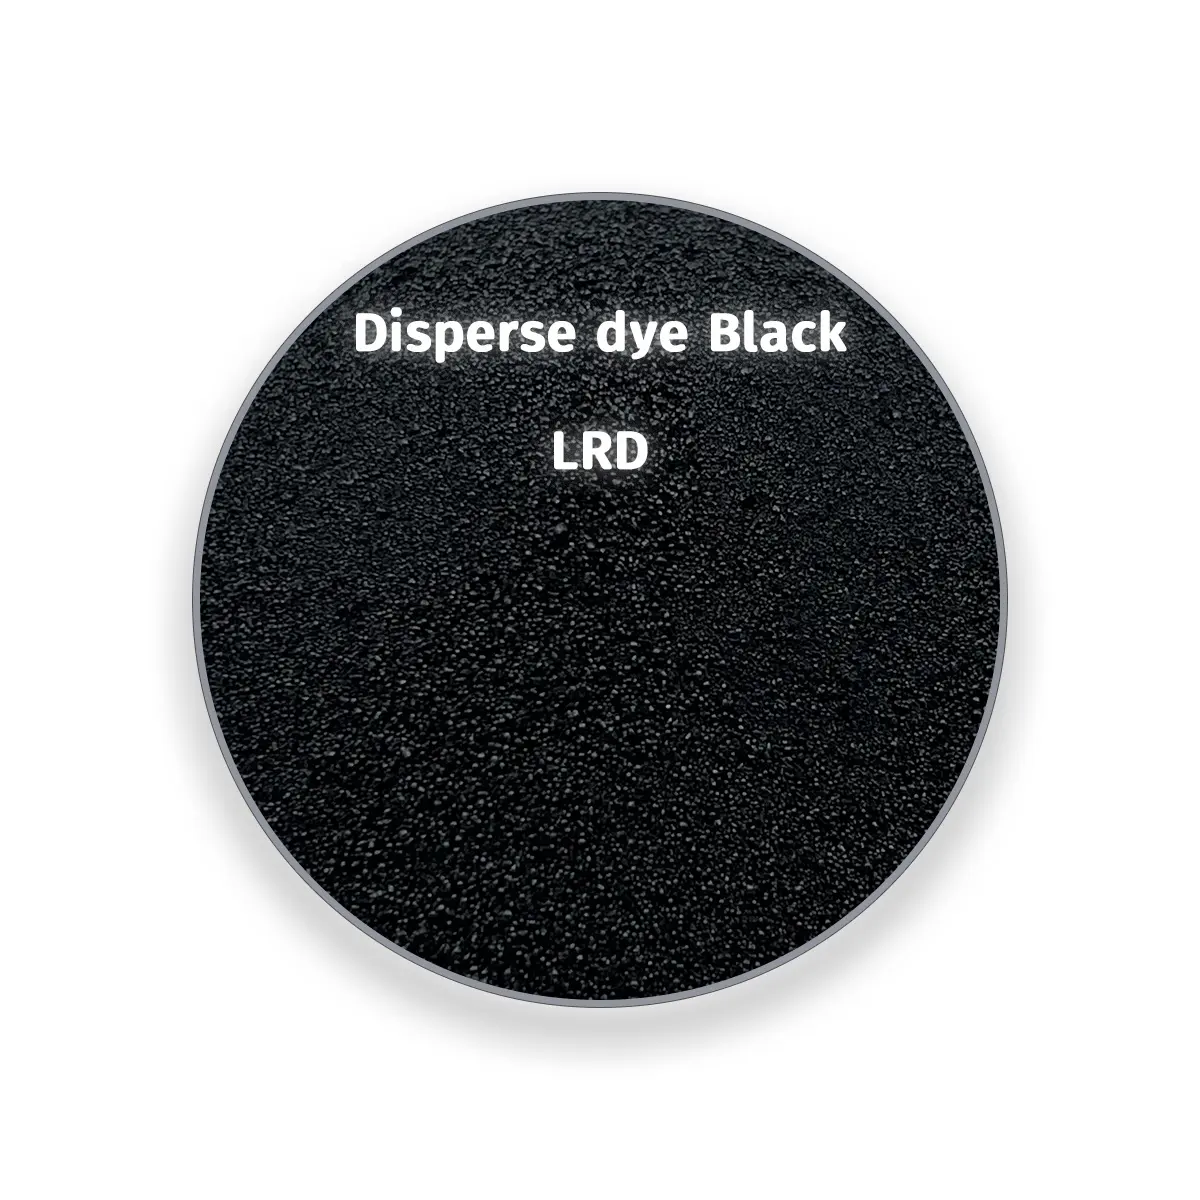 Cheveux raides d'usine Échantillon disponible à l'achat Disperse dye Black LRD Utilisé pour teindre le polyester et ses tissus mélangés